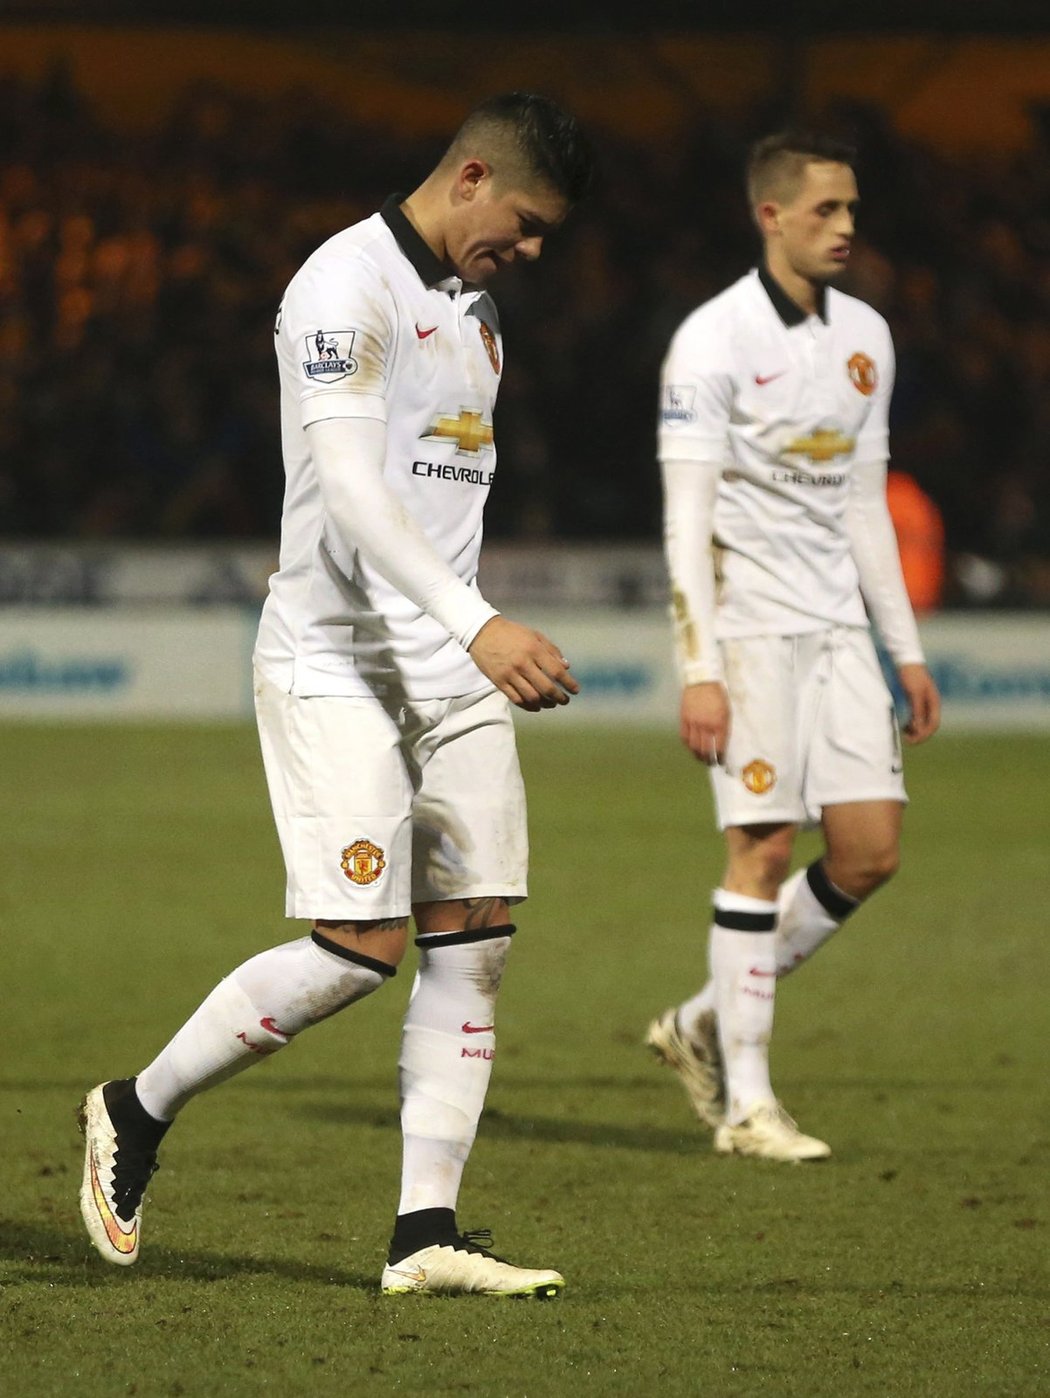 Zklamaní hráči Manchesteru United po pohárové remíze se čtvrtoligovým Cambridge